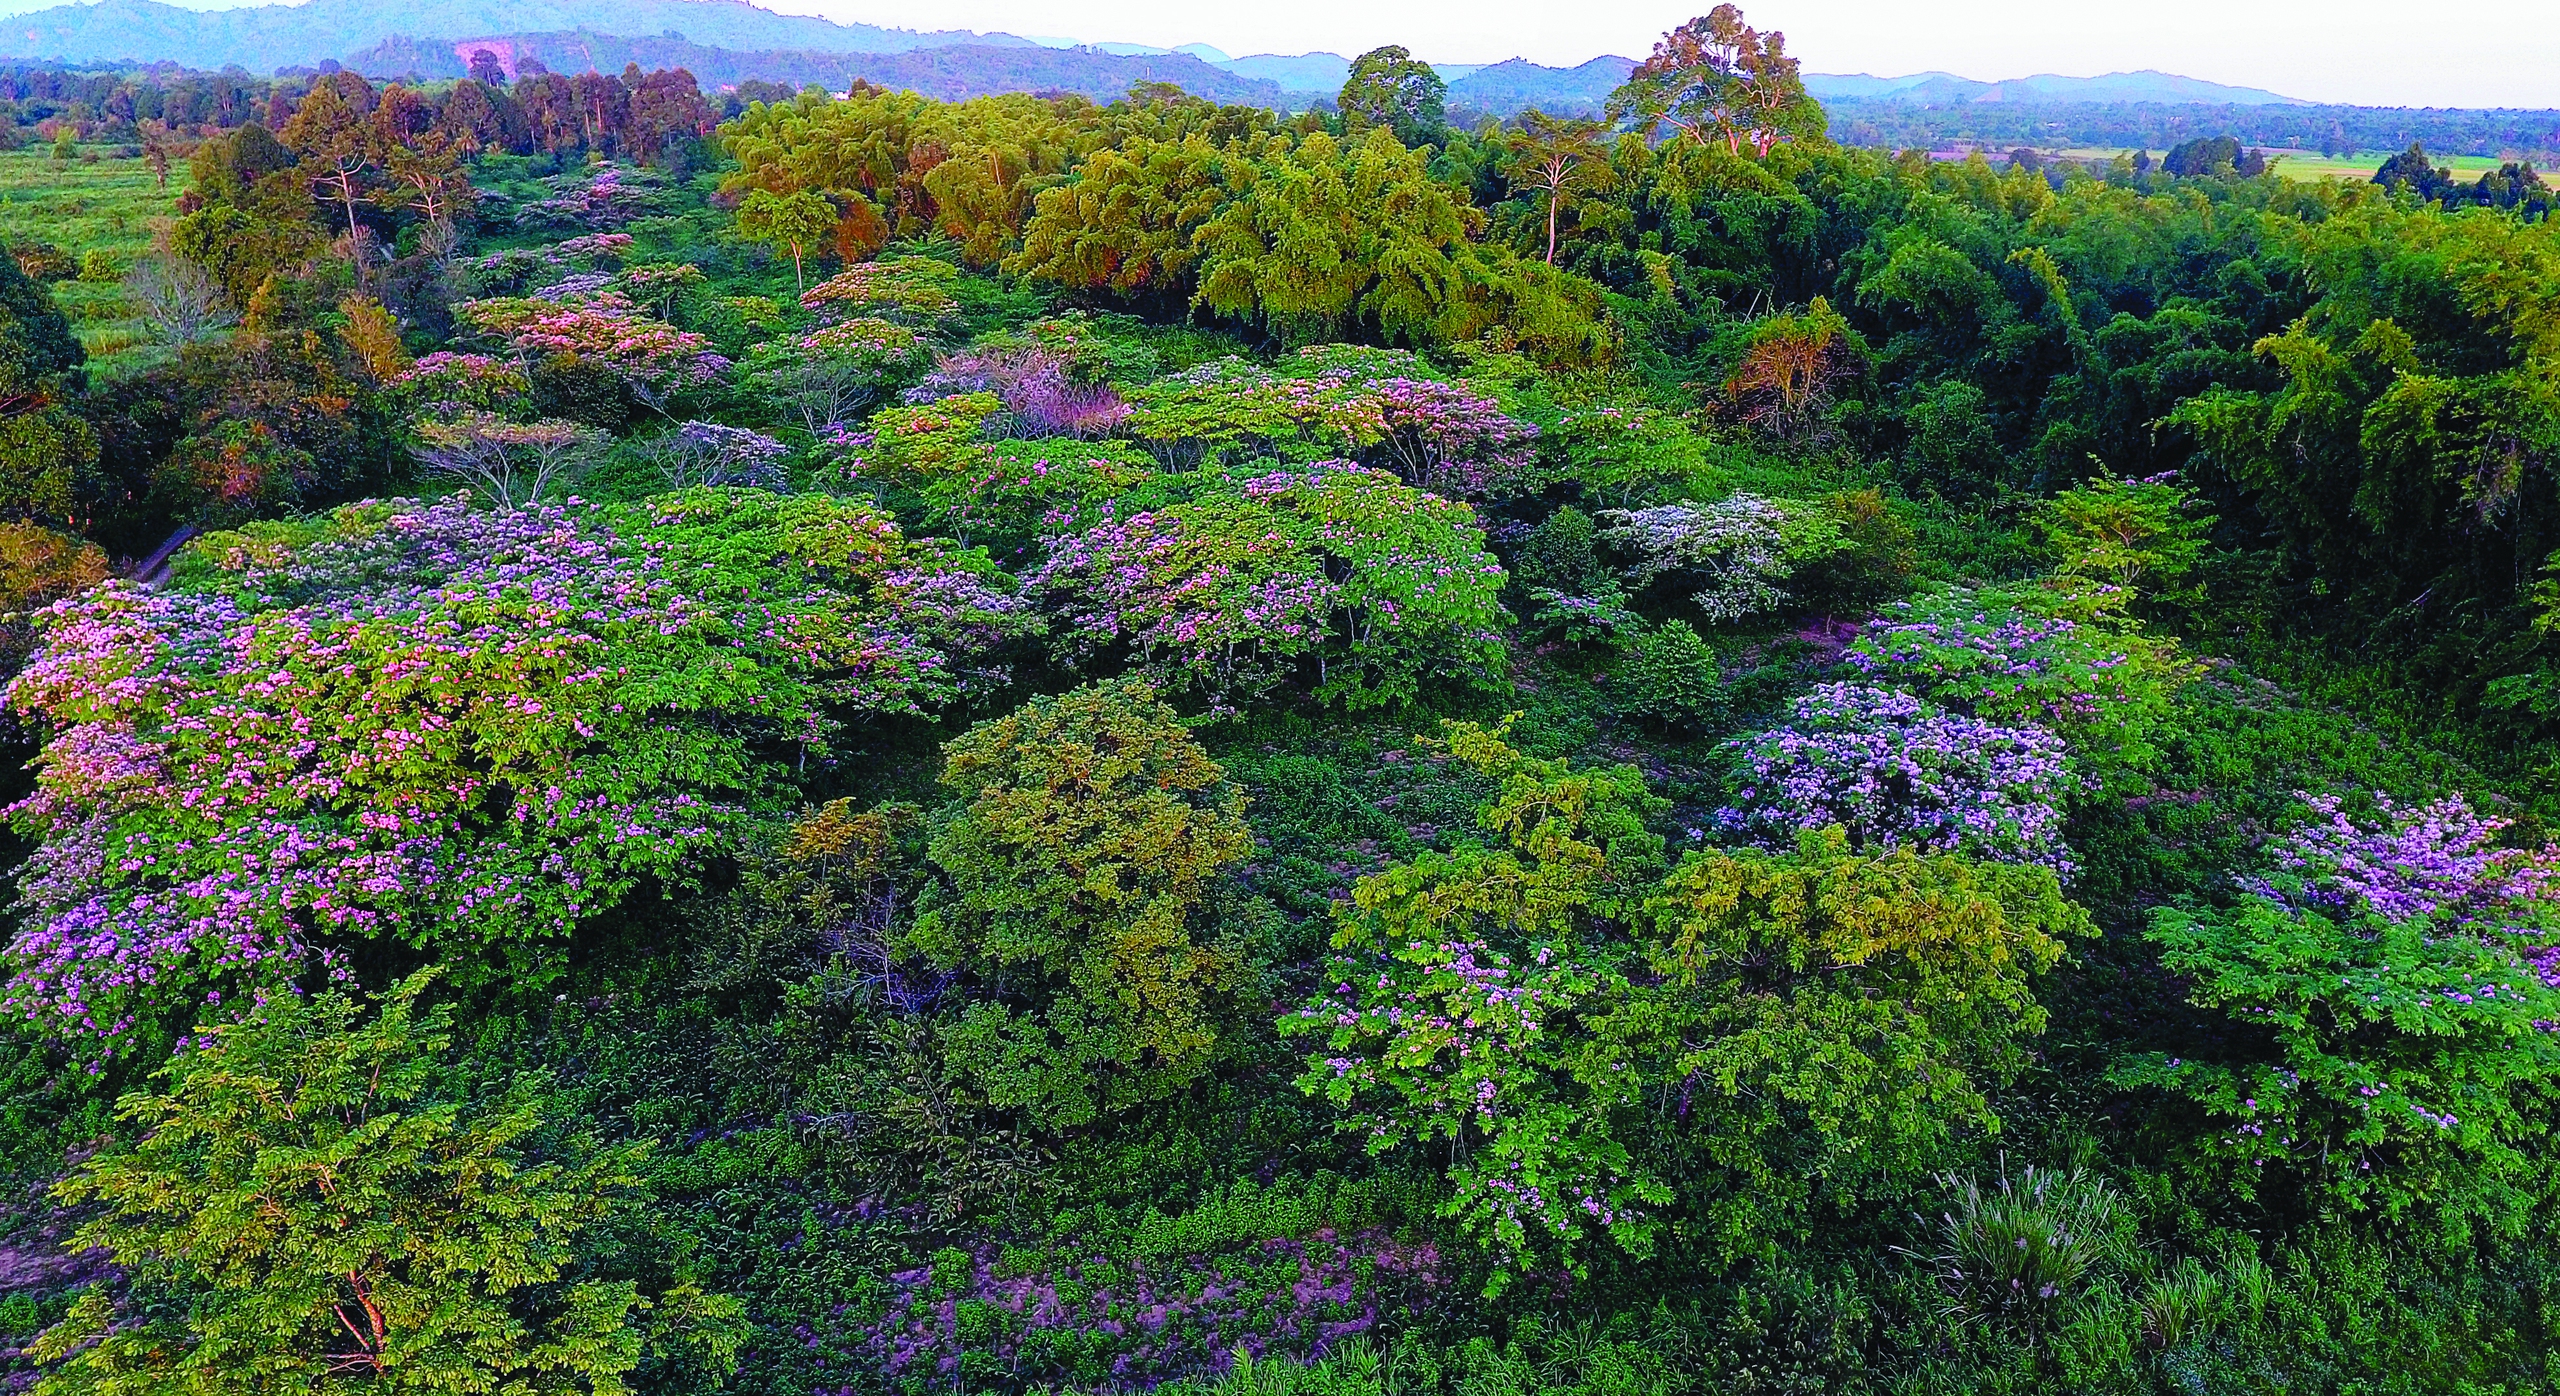 Một cây cổ thụ kỳ mỹ gần 500 tuổi tại khu rừng giáp ranh Lâm Đồng, Bình Phước, Đồng Nai ví như "thằn lằn sấm"- Ảnh 1.